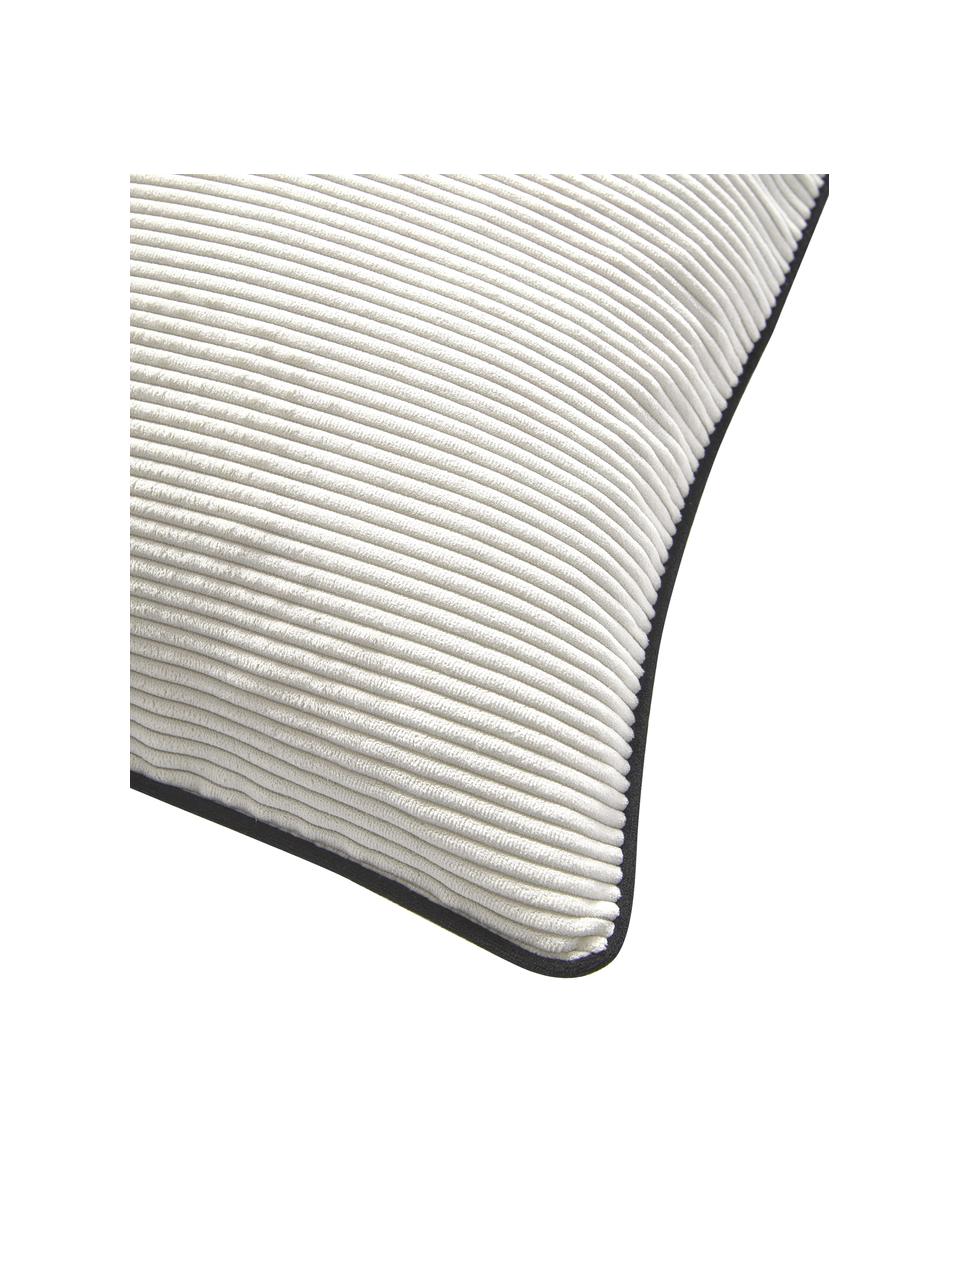 Geweven fluwelen kussenhoezen Carter in crèmewit met gestructureerde oppervlak, 2 stuks, 88% polyester, 12% nylon, Wit, B 45 x L 45 cm